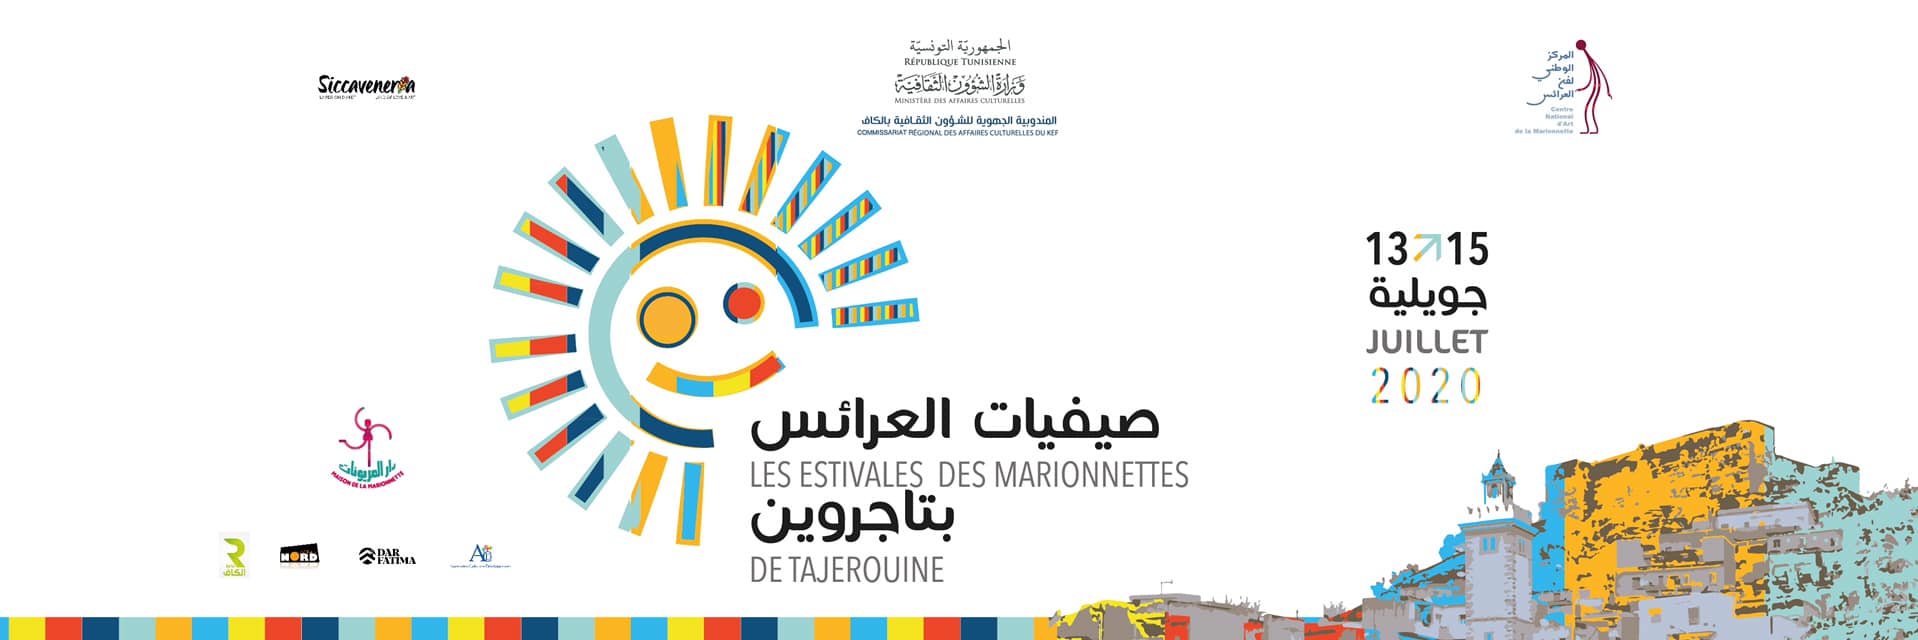 Tunisie: Les Estivales des marionnettes de Tajerouine se dérouleront entre le 13 et le 15 Juillet